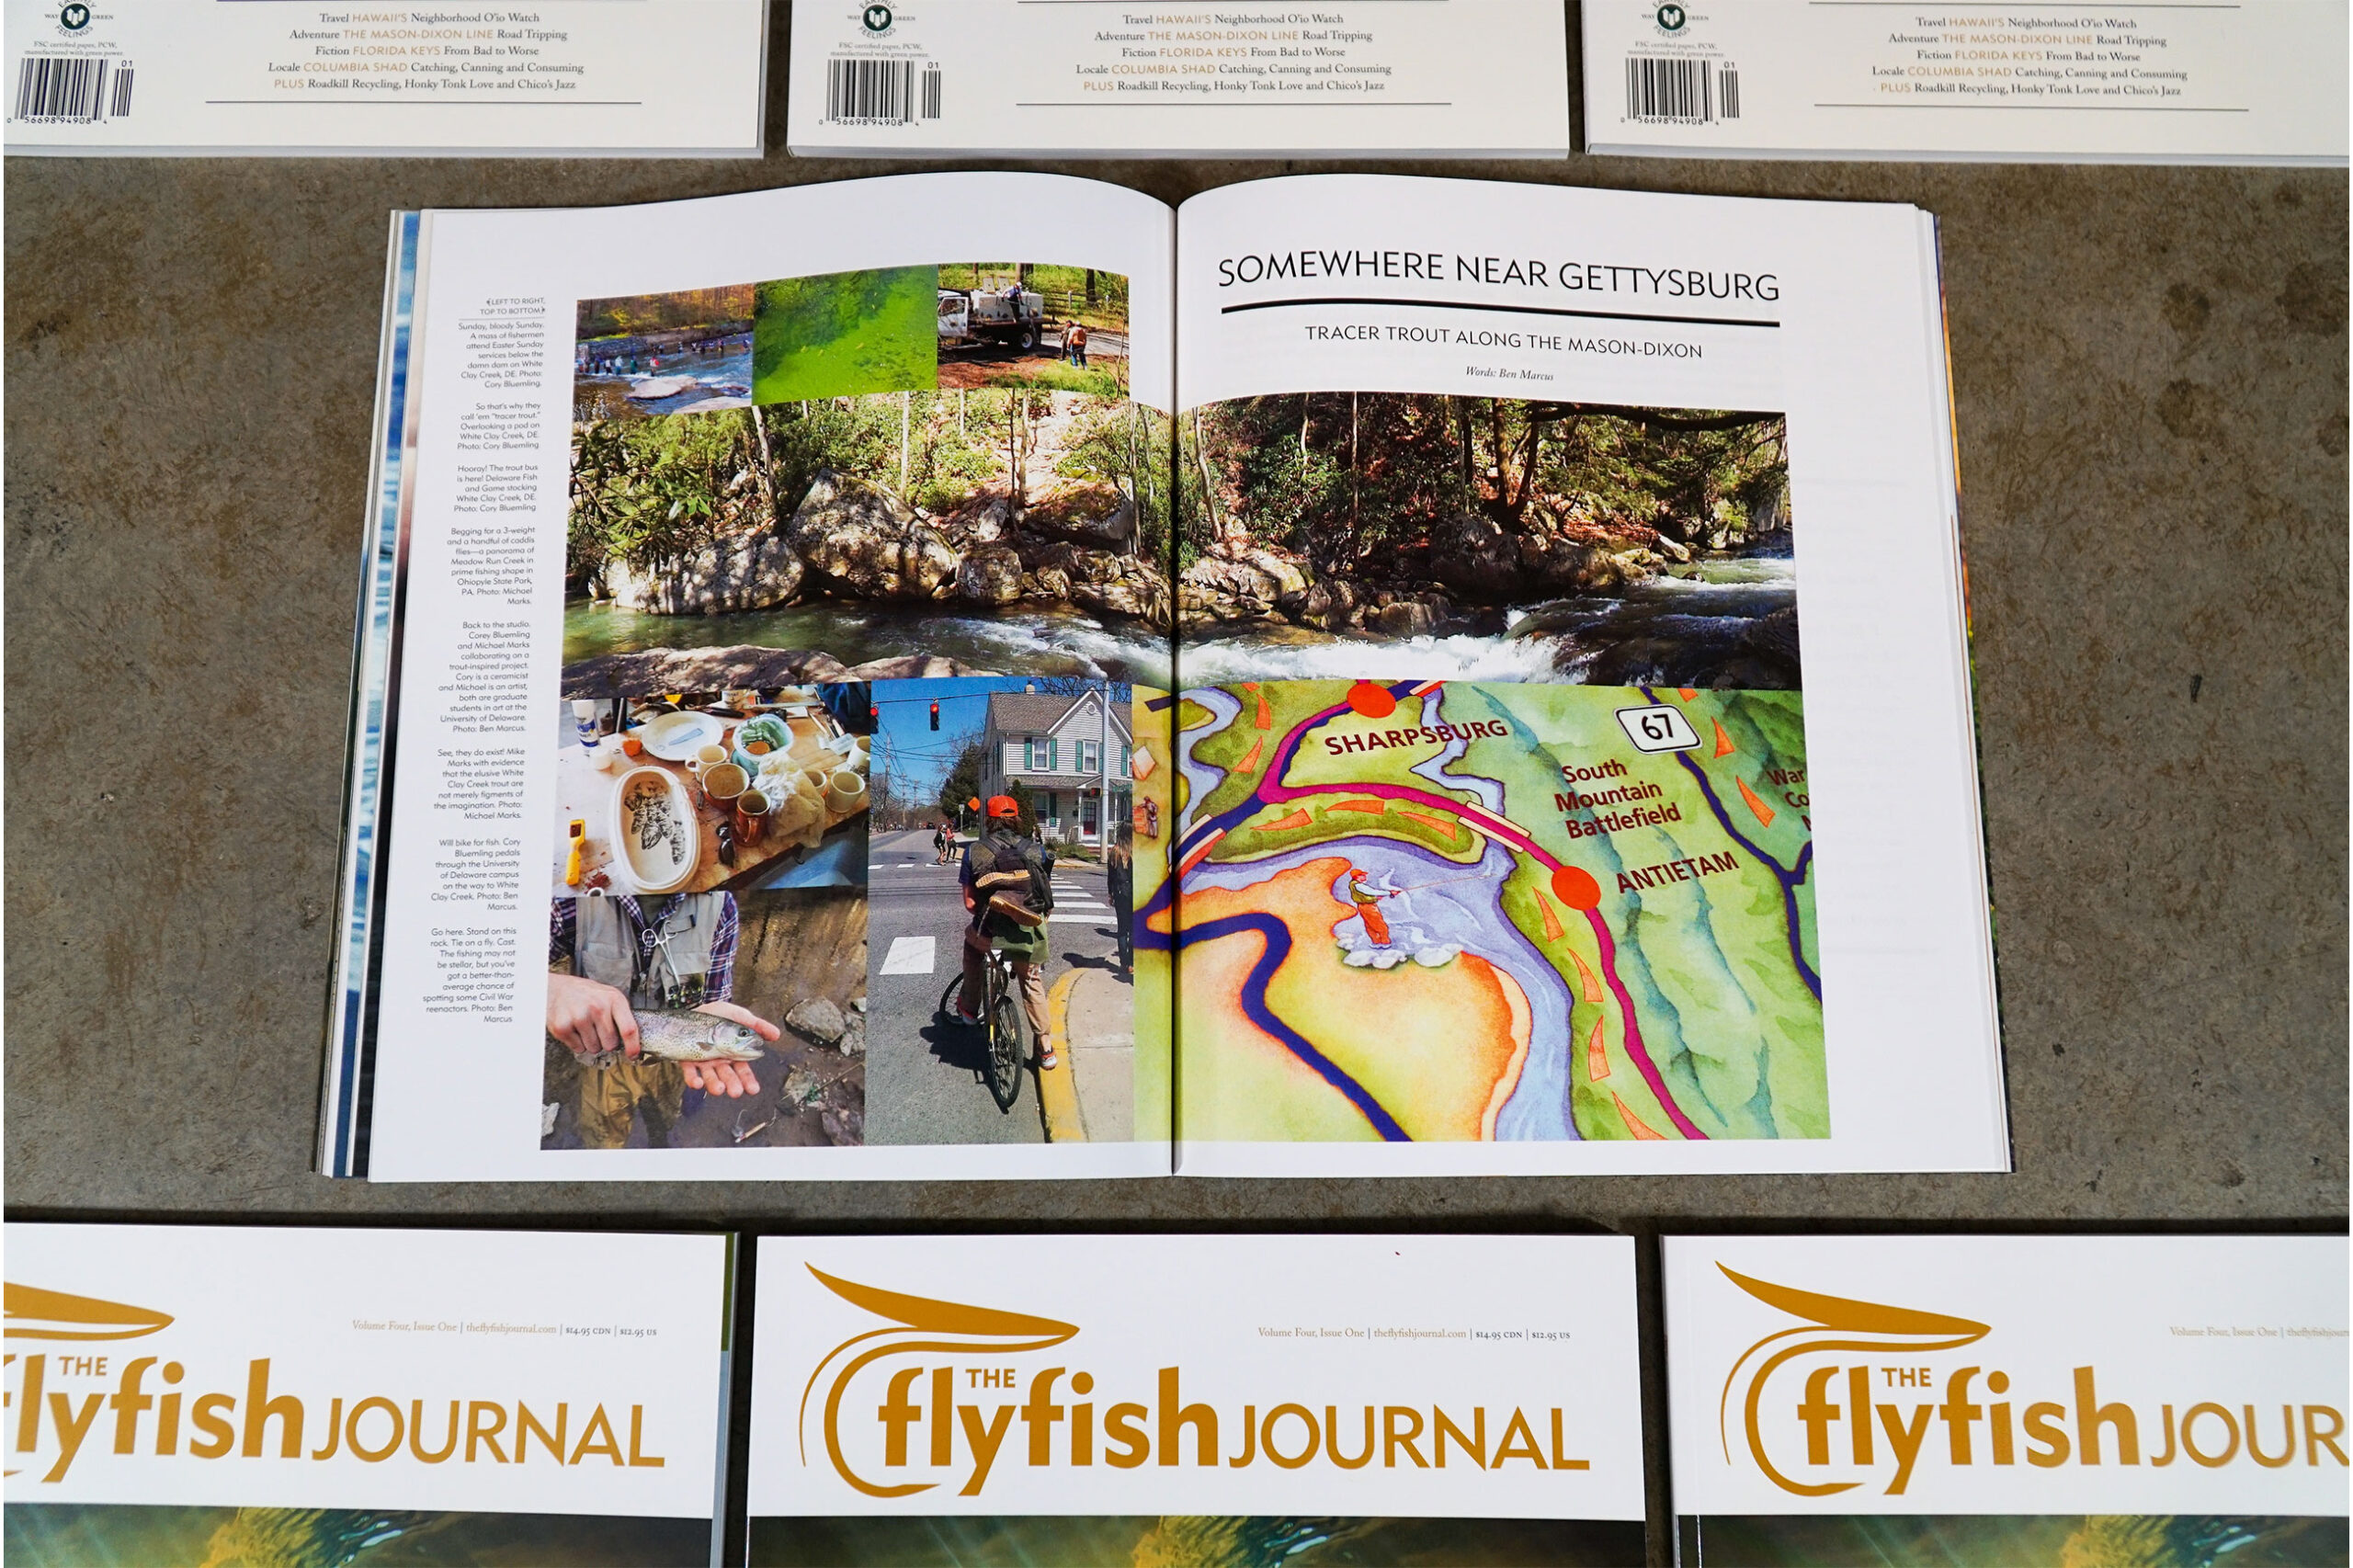 The Flyfish Journal Volume 4 Issue 1 Feature Somewhere near Gettysburg